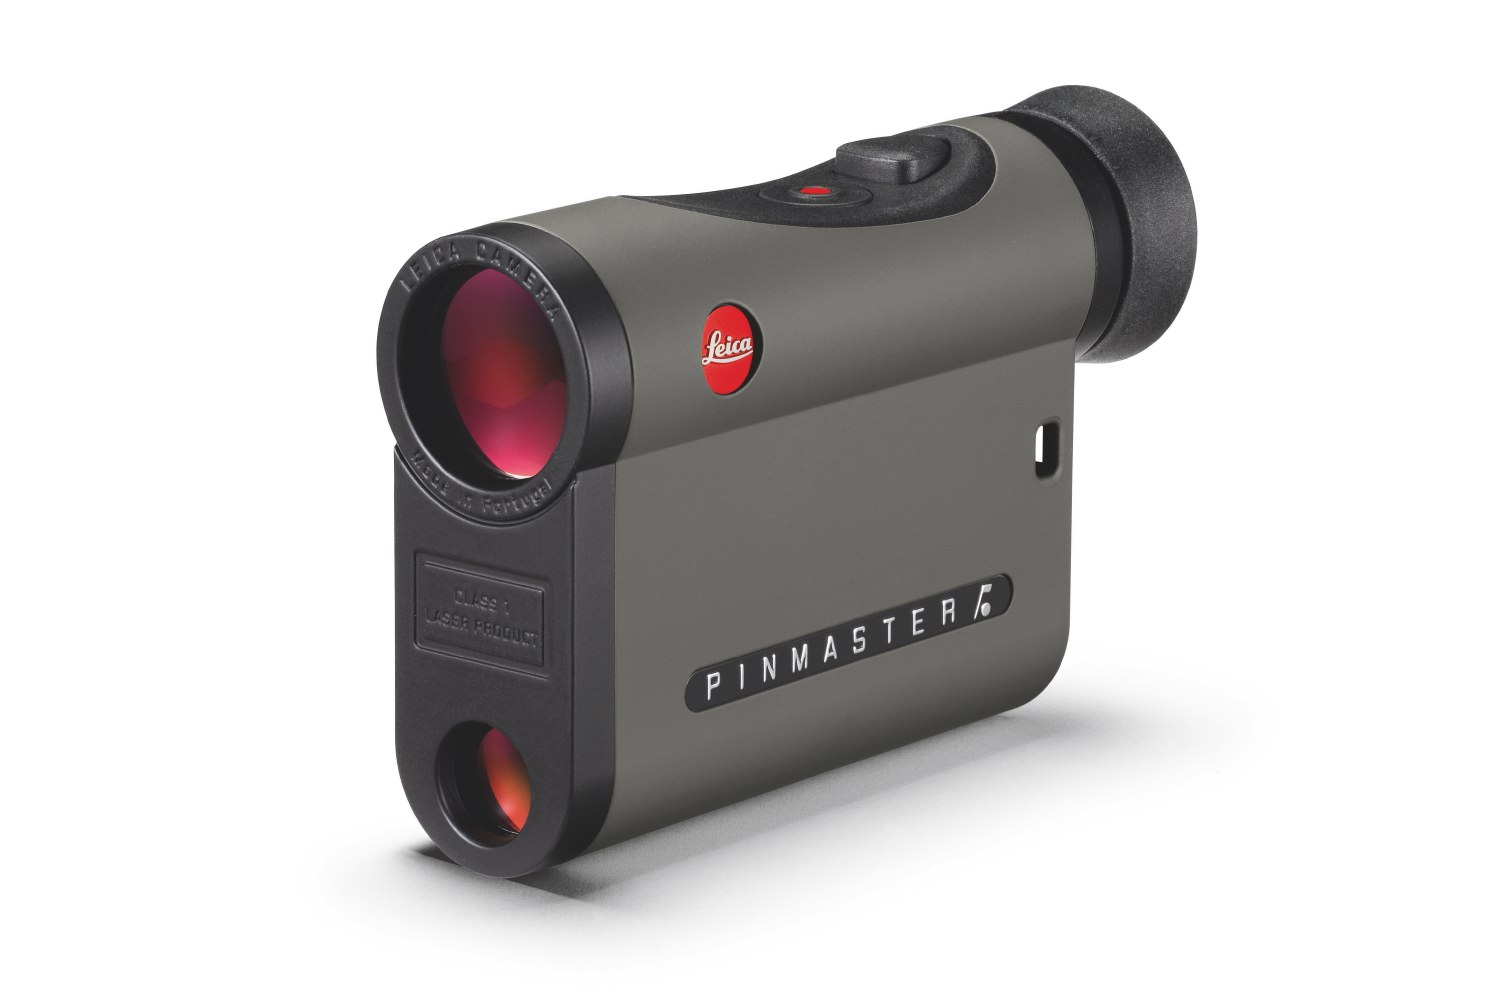 Leica Laserentfernungsmesser Pinmaster II  Der Laserentfernungsmesser bietet noch mehr Präzision bei jeder Wetterlage. 